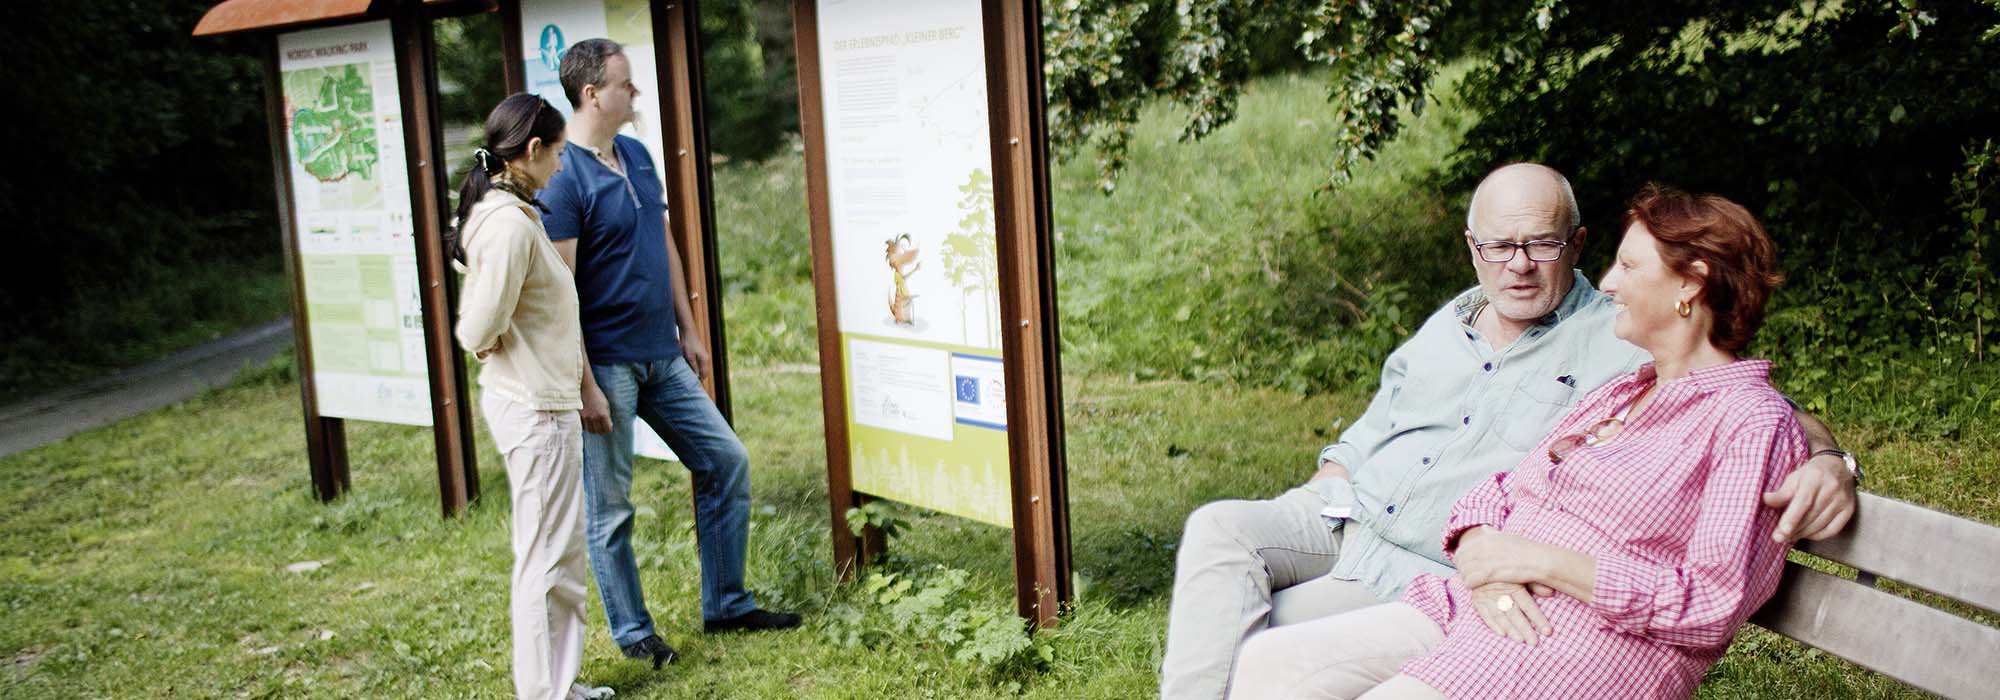 Ein Mann und eine Frau sitzen auf einer Bank im Grünen, während zwei andere Menschen sich eine Informationstafel ansehen